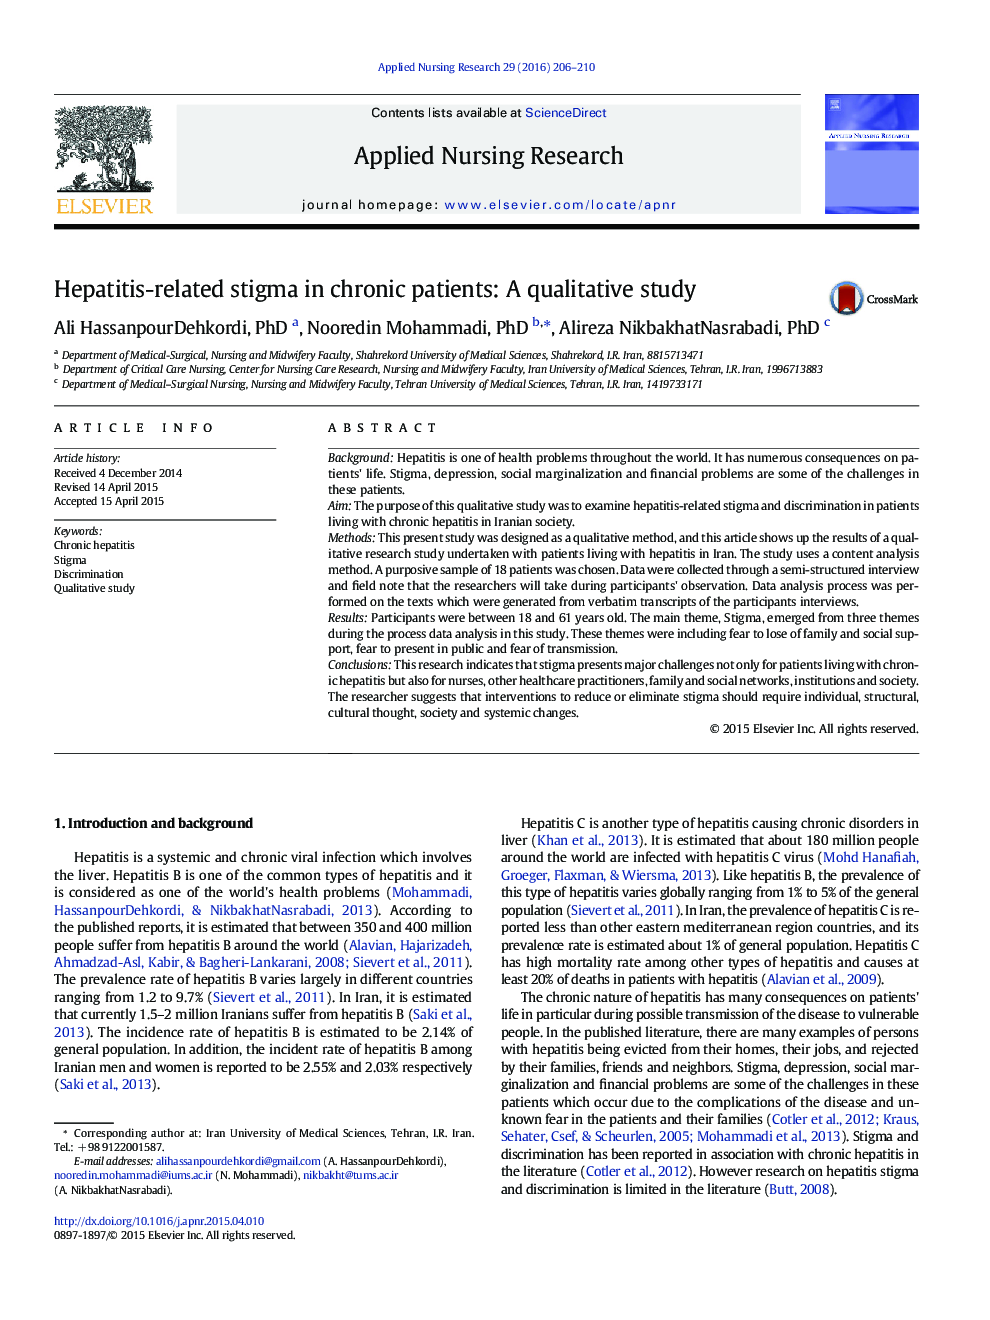 سندرم اصلی مقاله مربوط به هپاتیت در بیماران مزمن: یک مطالعه کیفی 